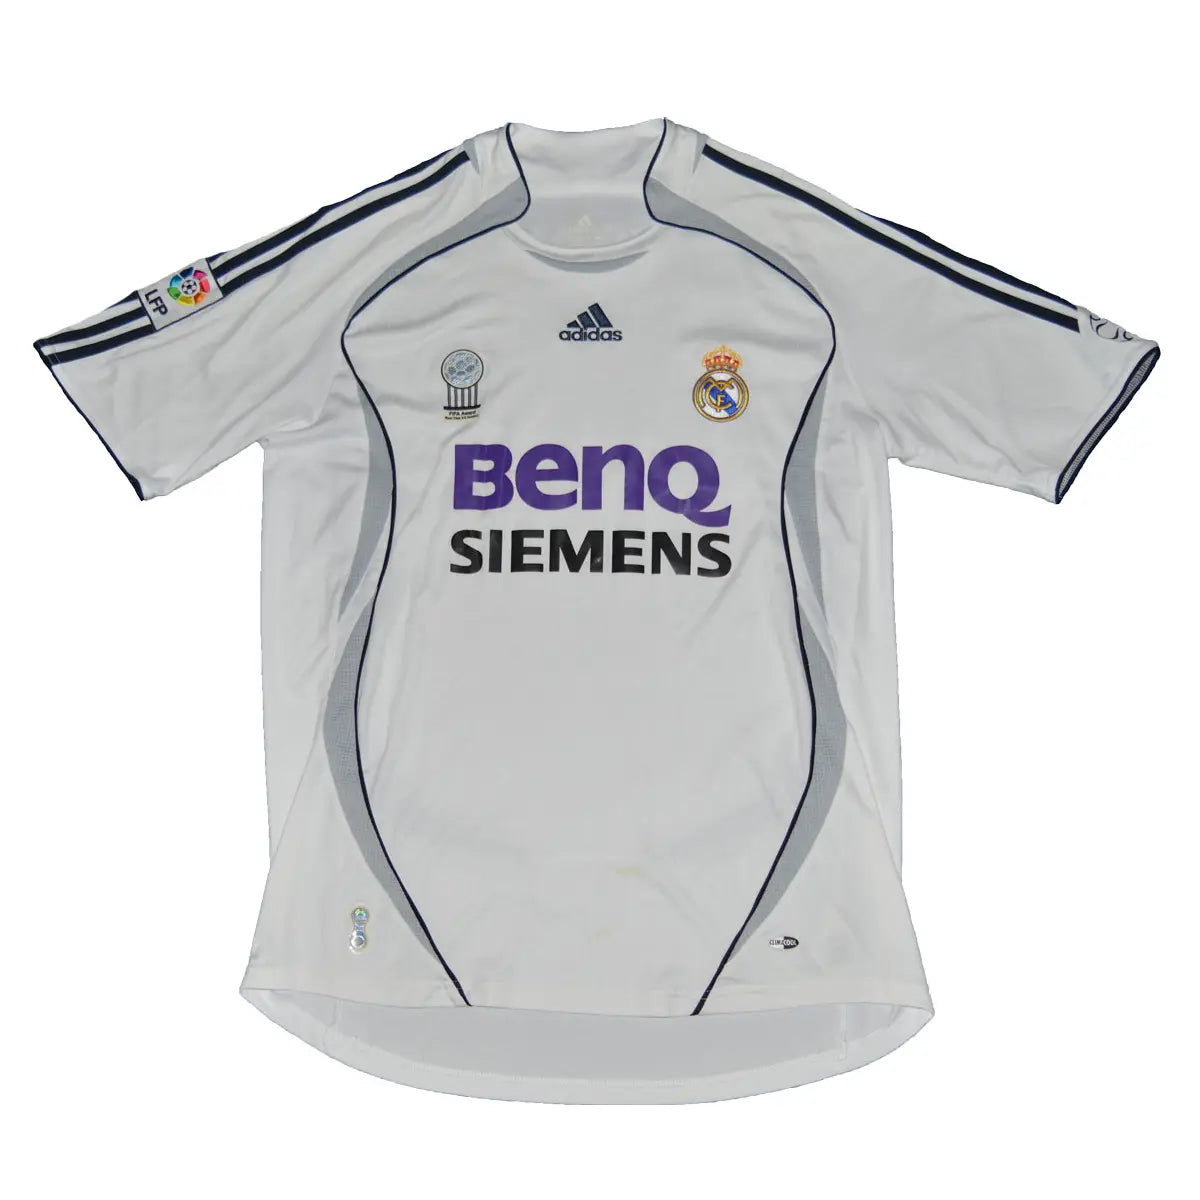 Maillot de foot rétro/vintage authentique blanc adidas Real Madrid domicile 2006-2007 Roberto Carlos